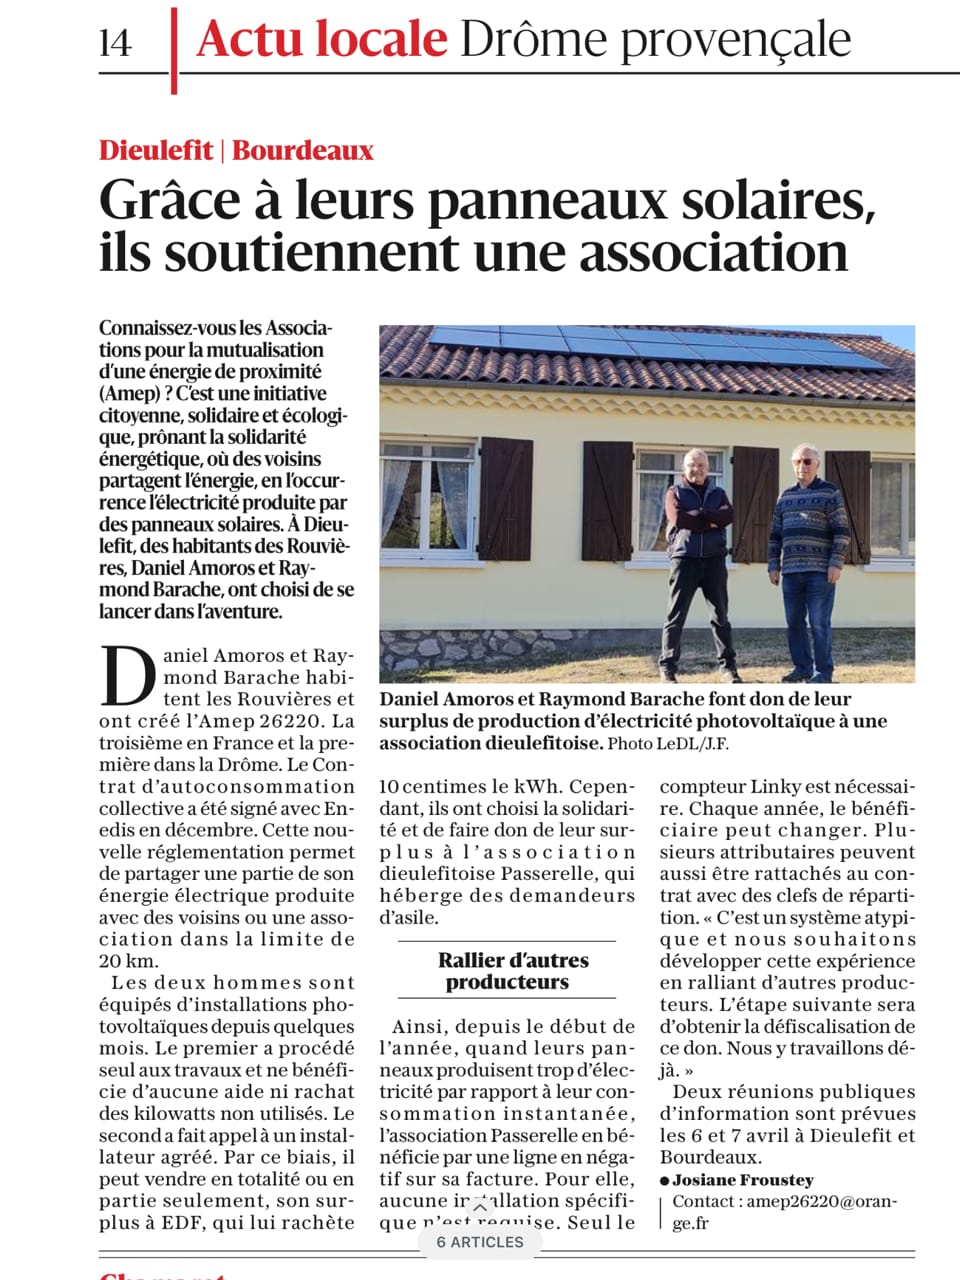 La Provence - Partage d'électricité entre voisins - communauté